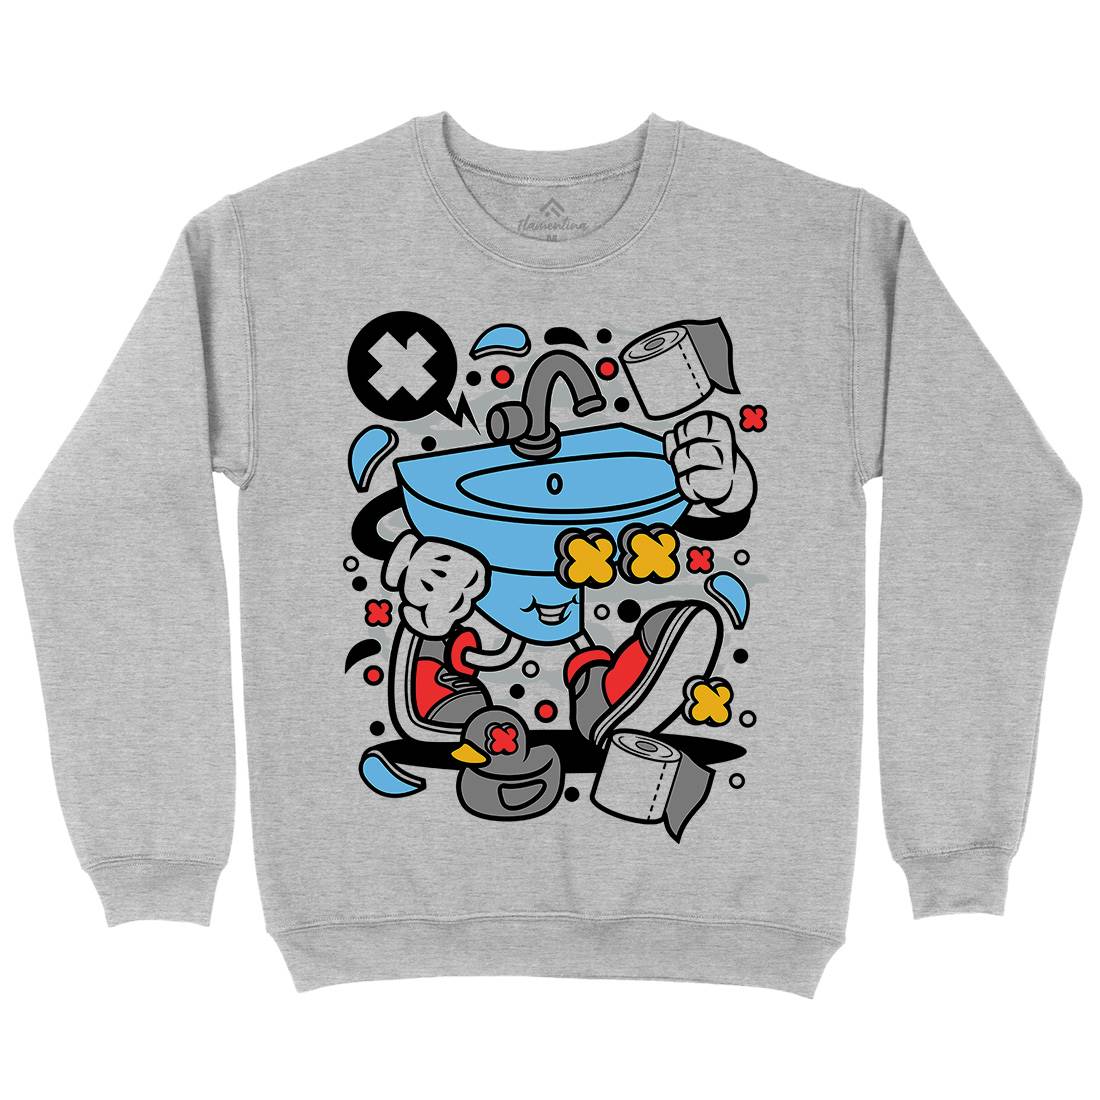 Sink Kids Crew Neck Sweatshirt Retro C652